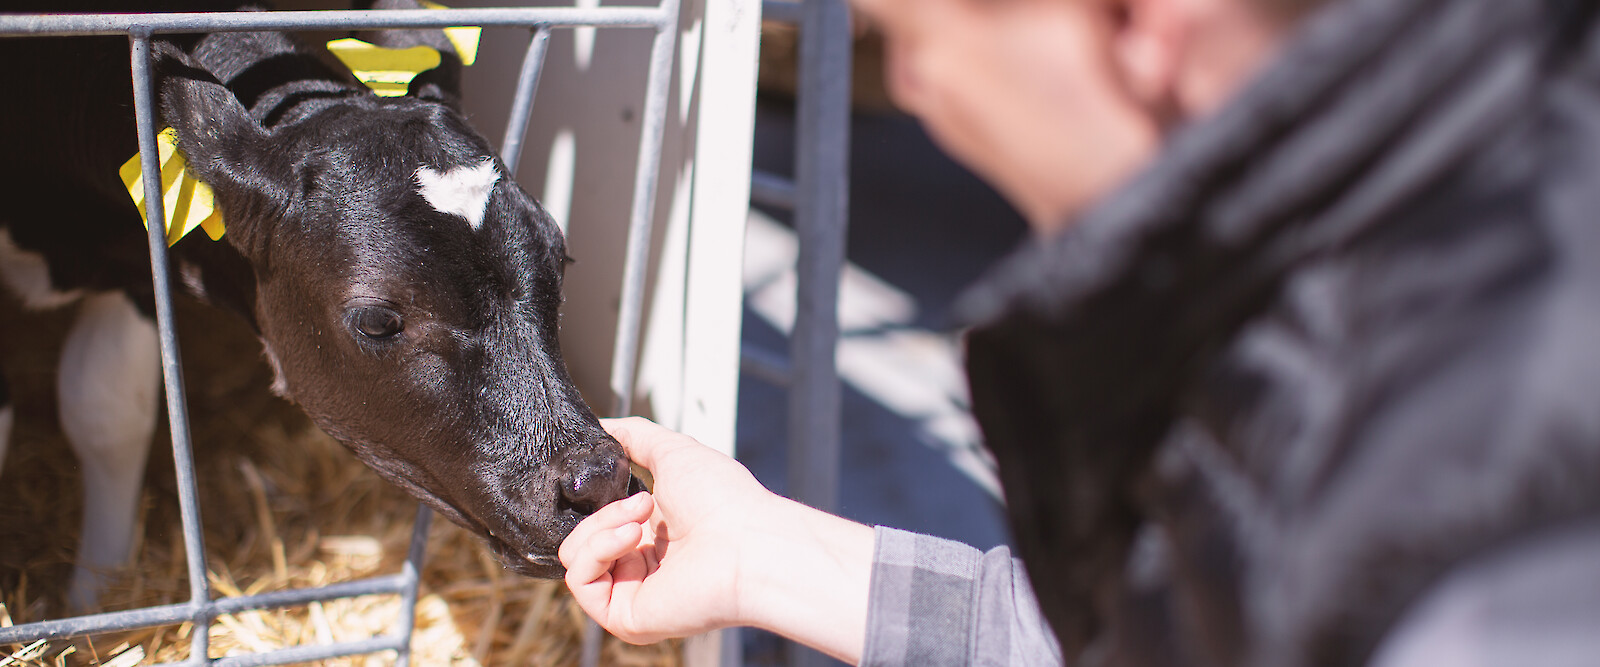 deuka-Fachberater für Rinder- und Kälberfütterung an Iglo mit noch jungem Kalb (© Deutsche Tiernahrung Cremer).